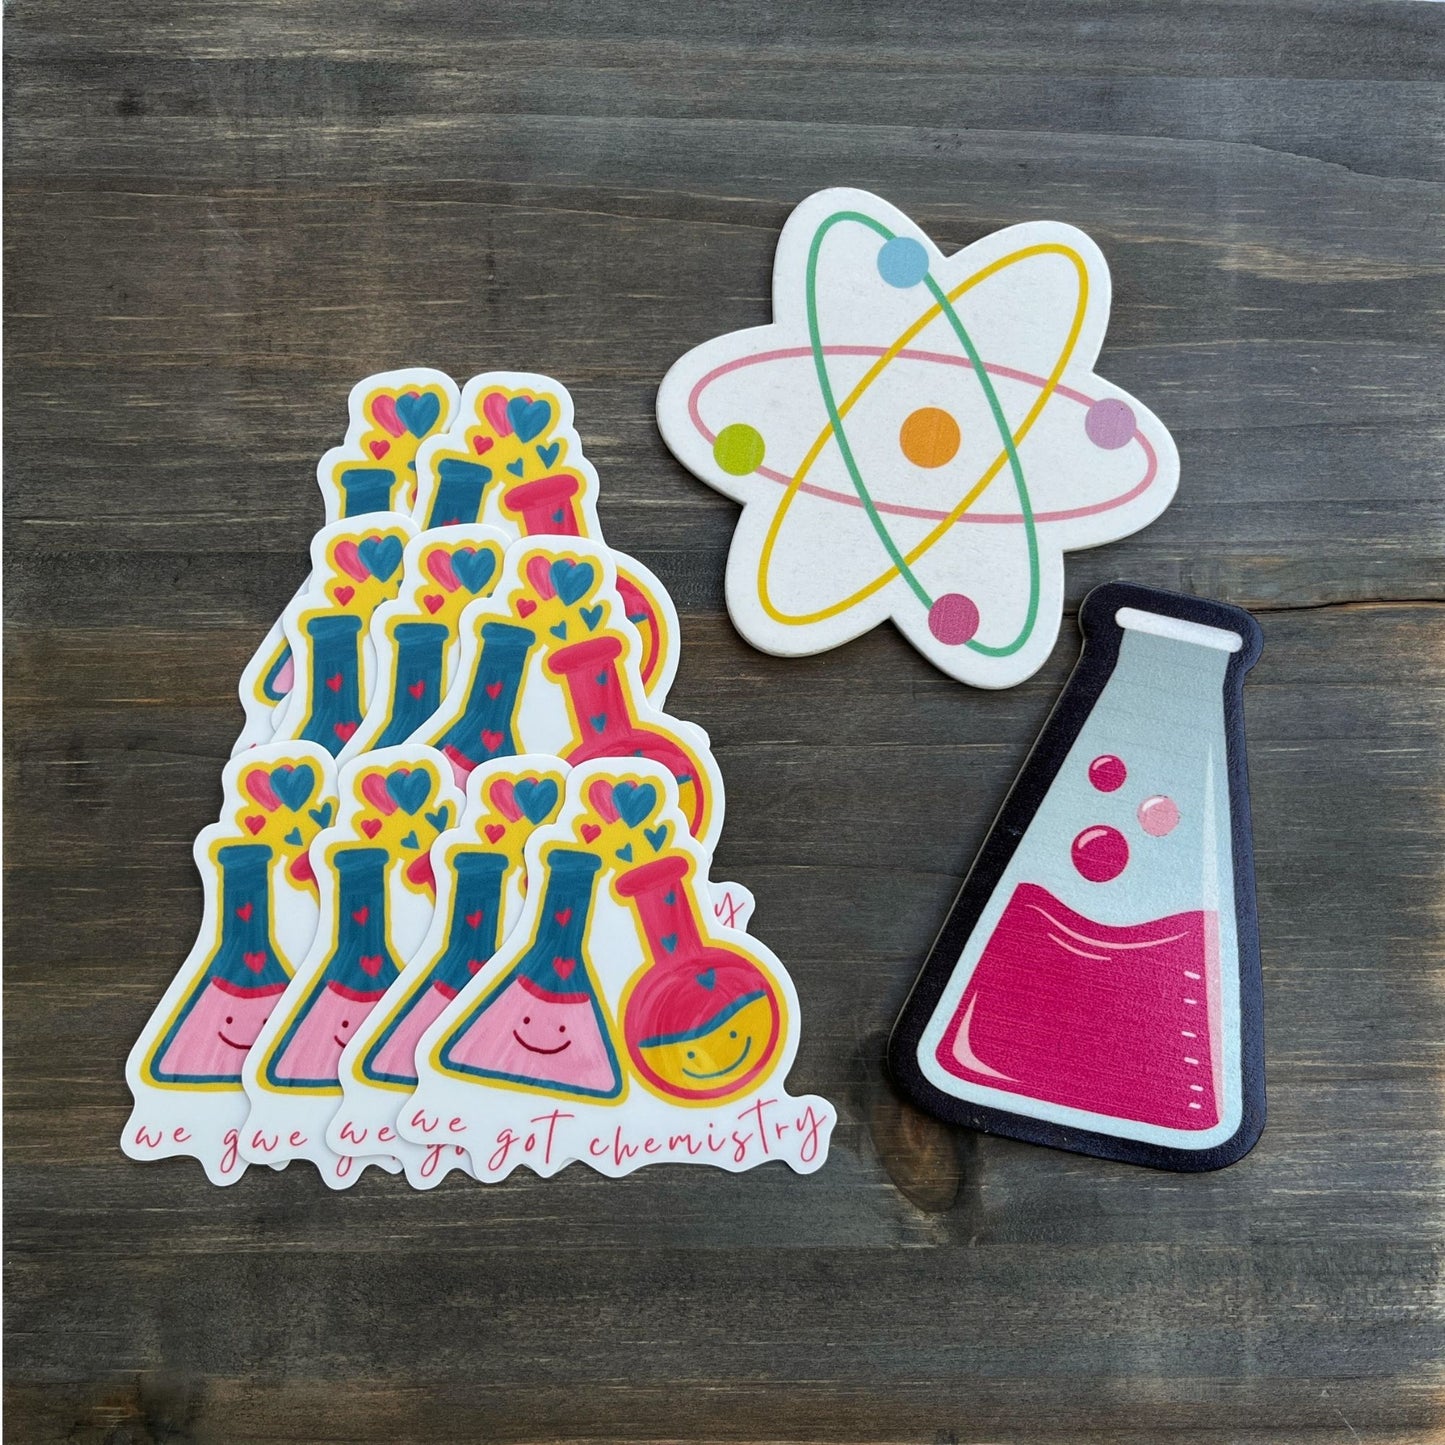 We Got Chemistry 🧪😛 Vinyl Sticker